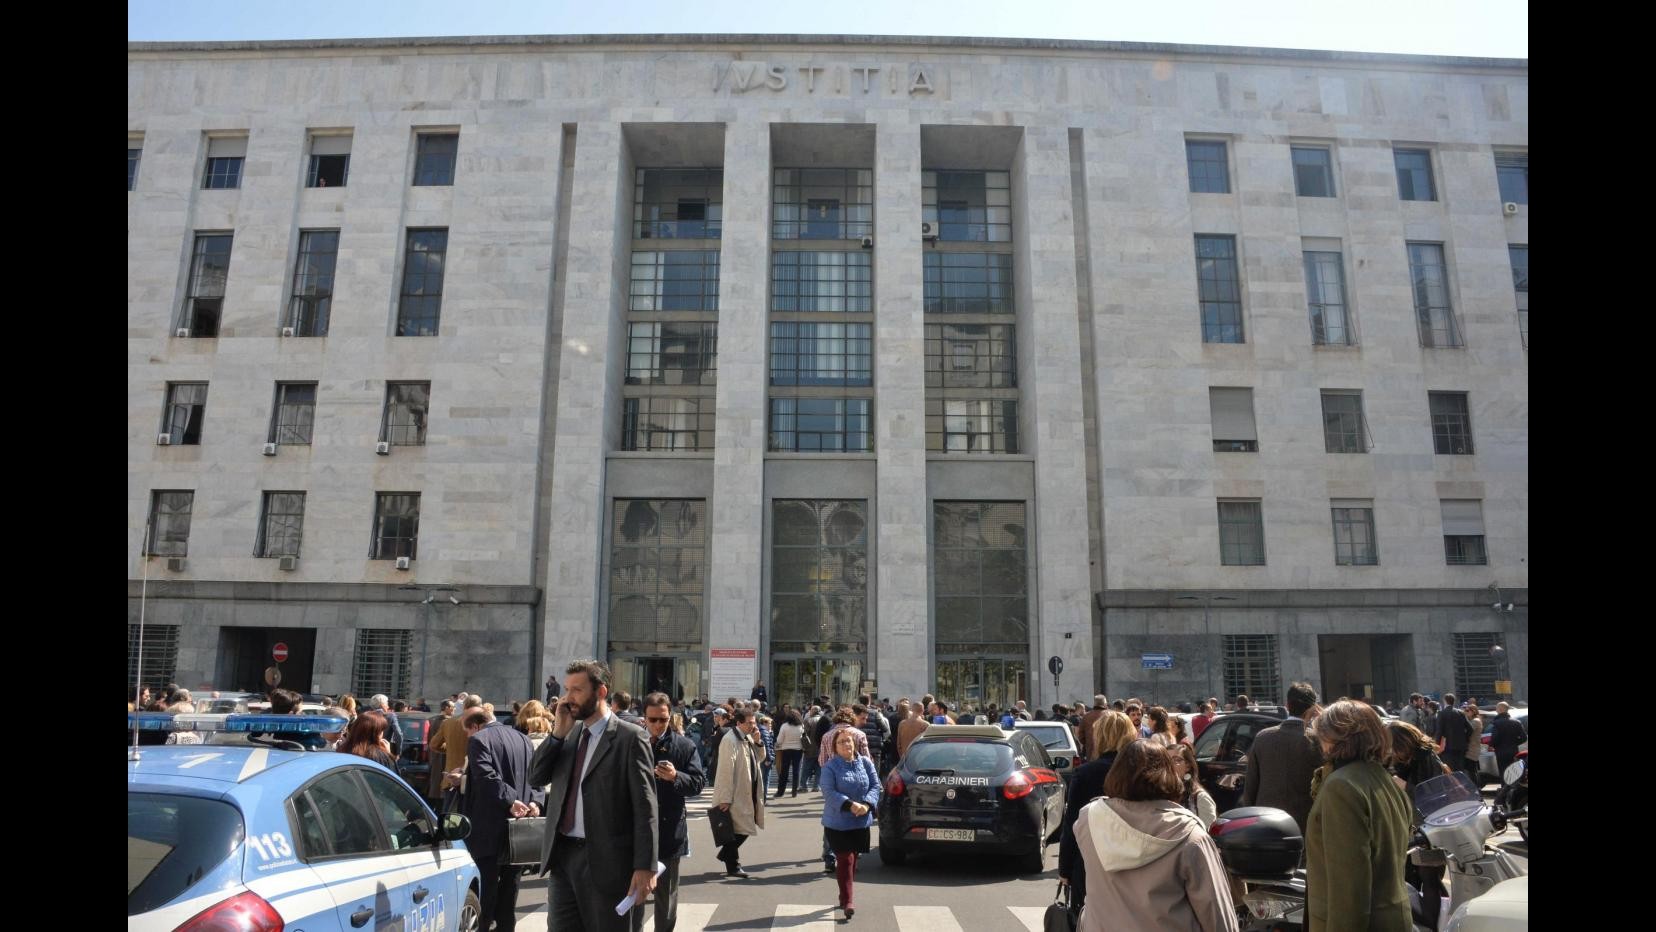 Spari Tribunale, si intensificano i controlliFiori davanti a porta giudice Ciampi